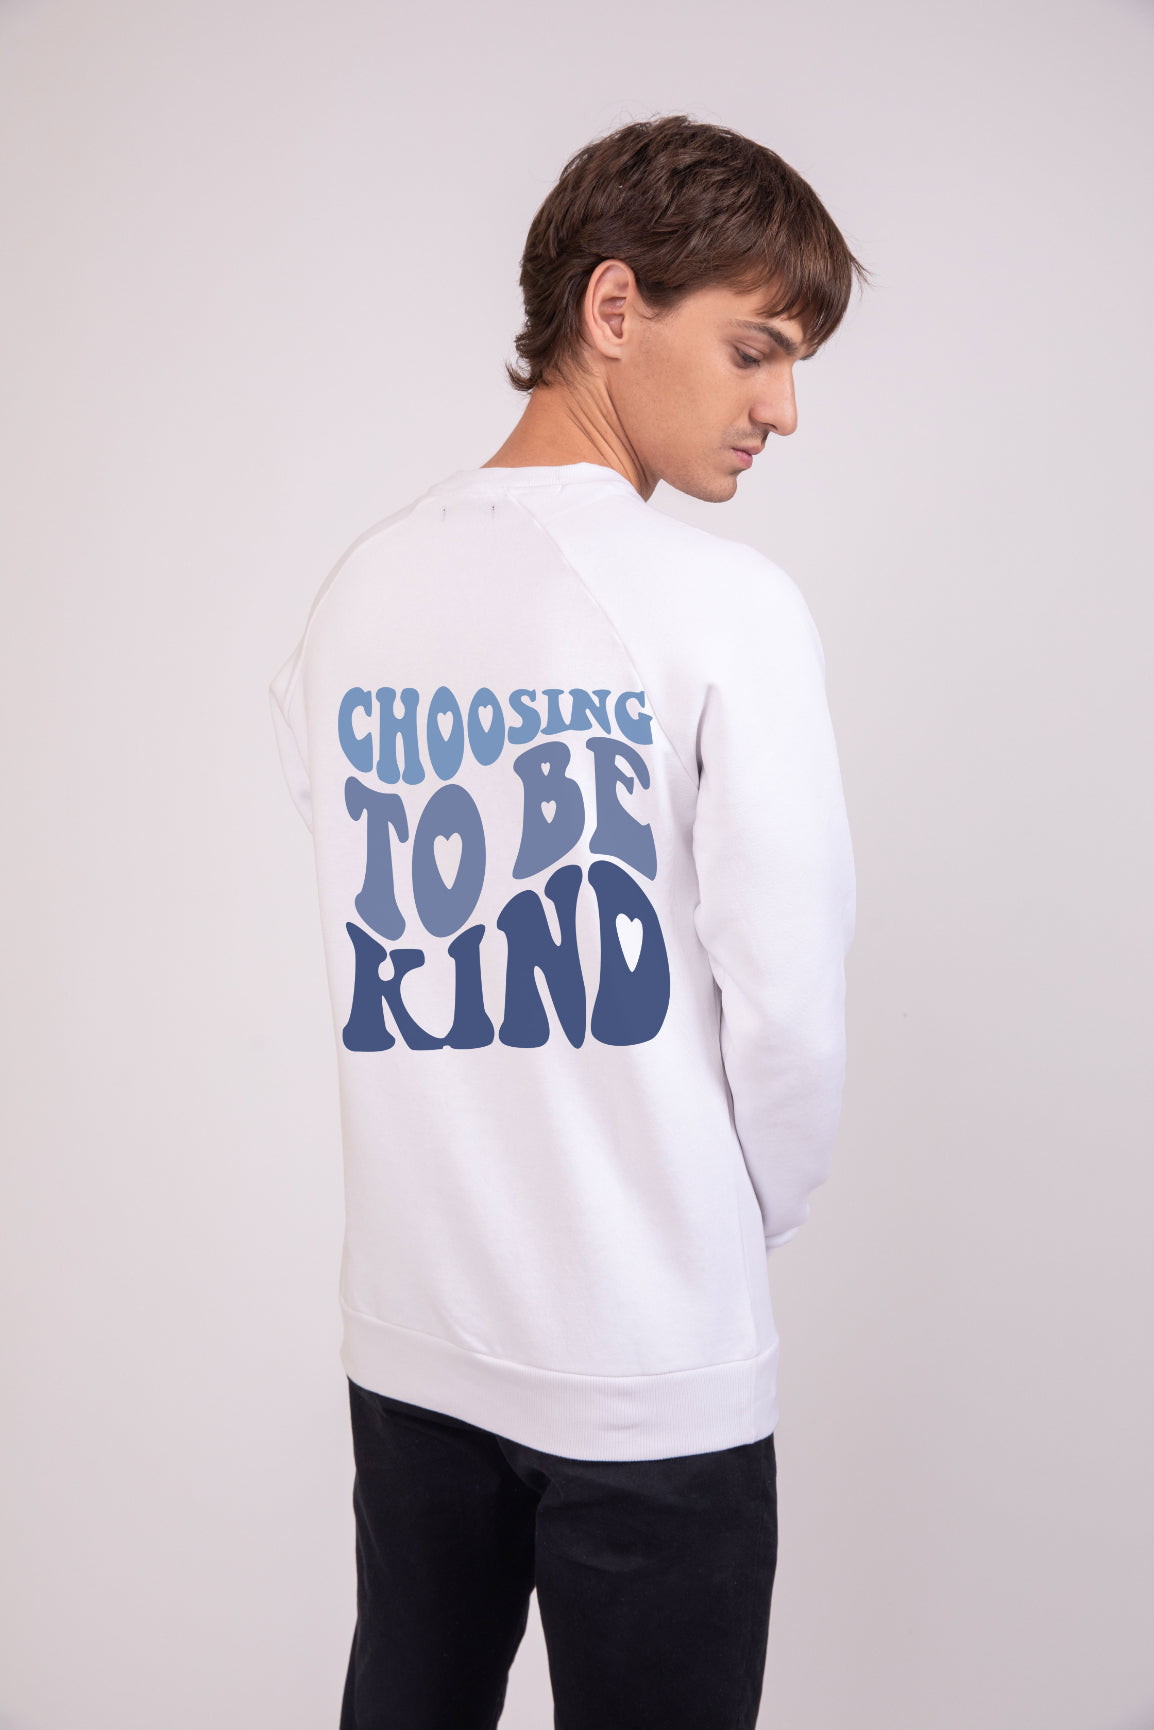 Choosing to be kind Radiant White - Printed Sweatshirt